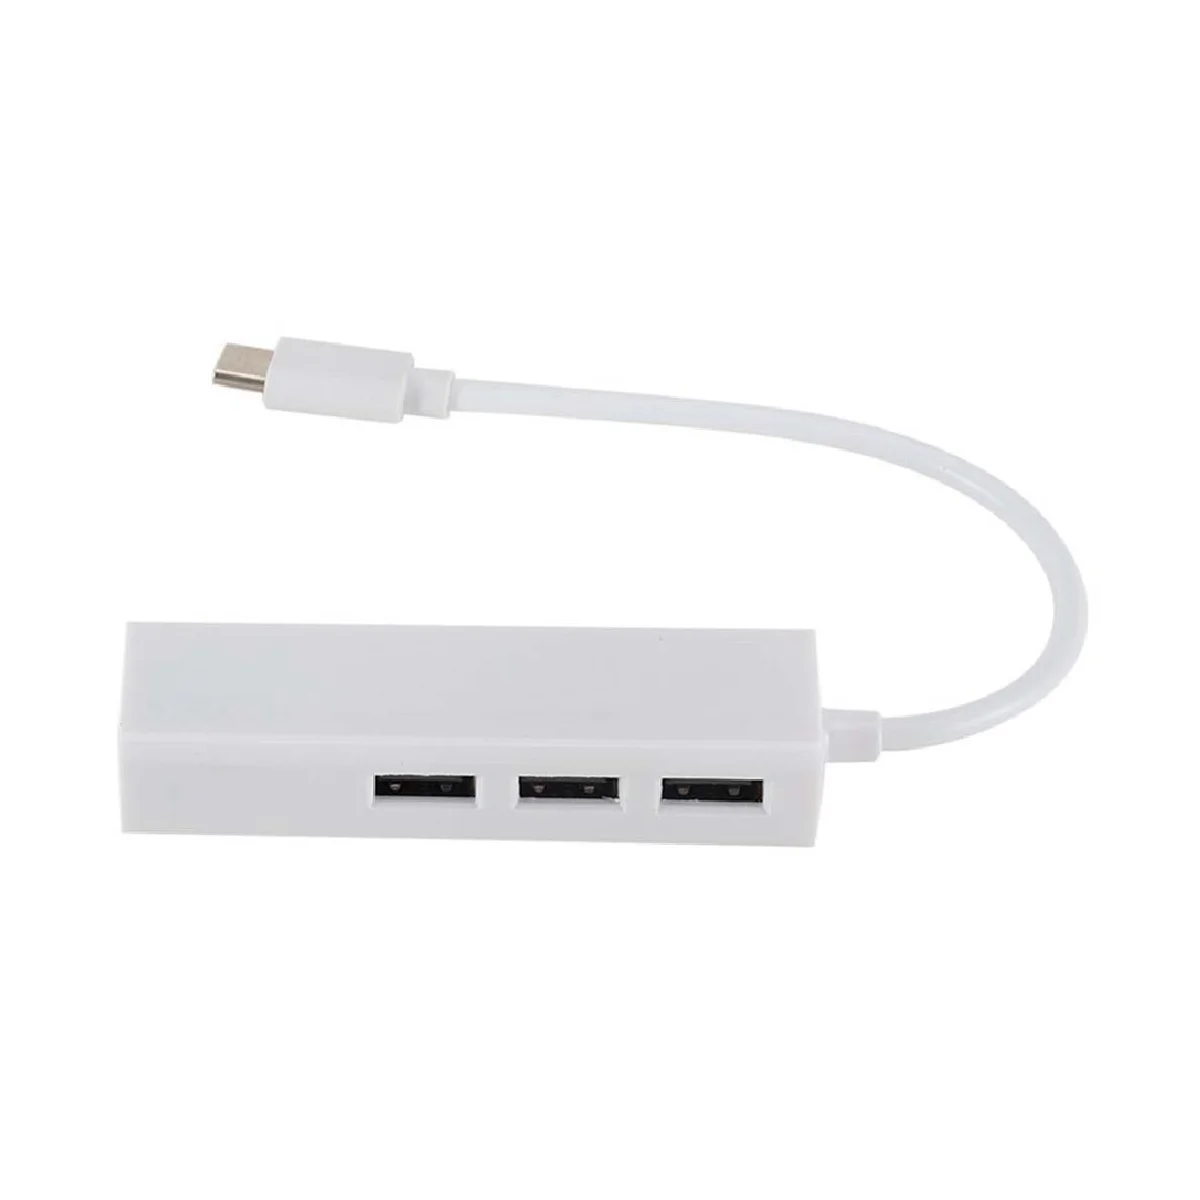 

Сетевая карта USB Type C на USB2.0 2,0 Гбит/с, хаб Lan Rj45 Ethernet, сетевой адаптер с 3 портами USB